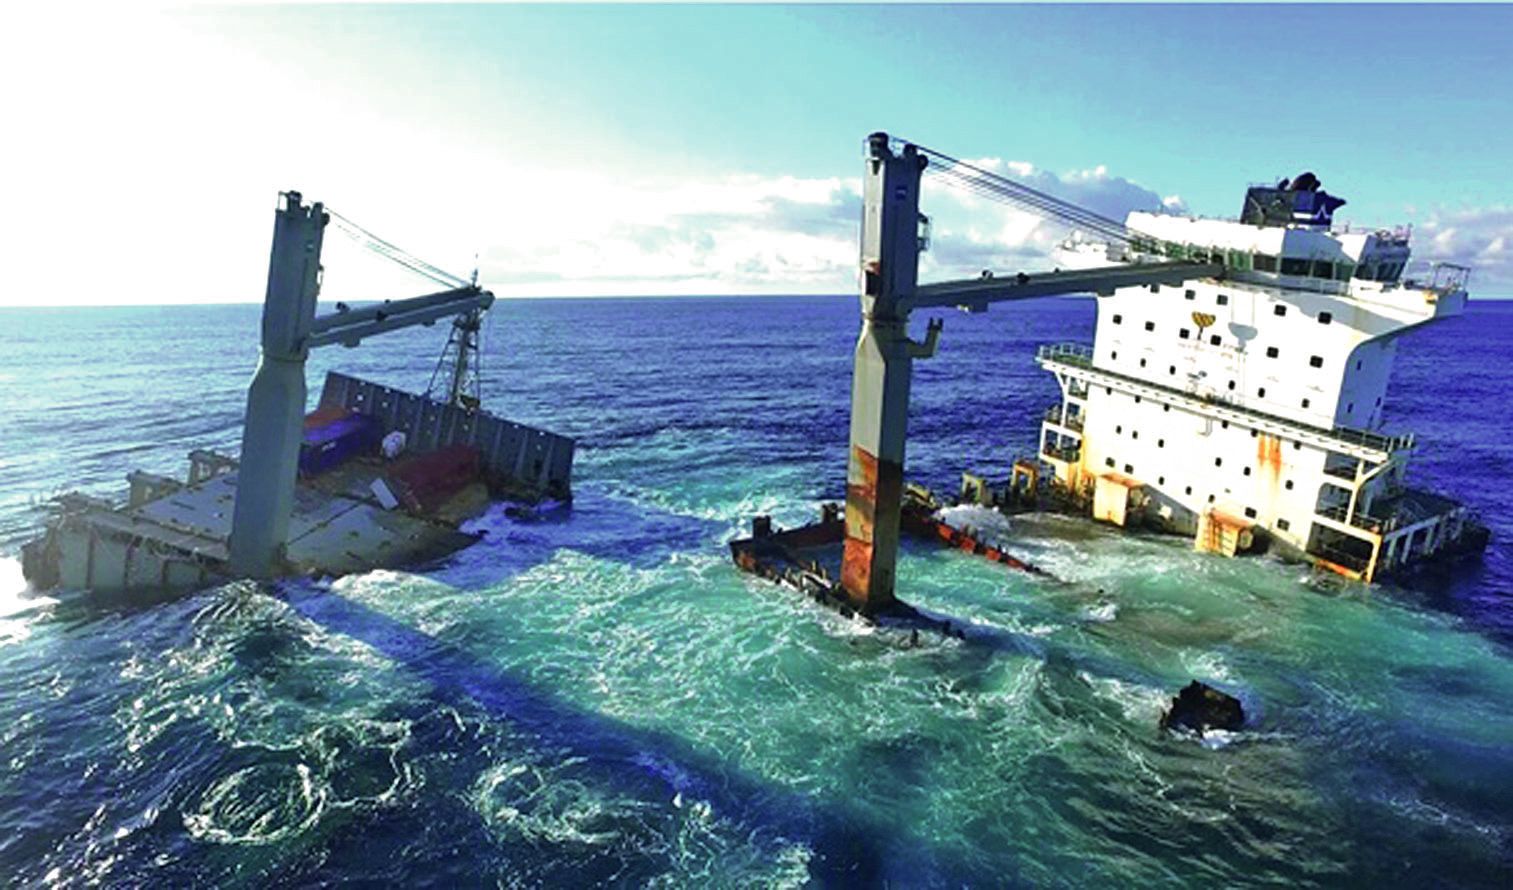 Lancé à 18 nœuds, le navire, de la compagnie Lomar Shipping, se fracasse sur le récif Durand, le 12 juillet 2017. Il est échoué sur 70 % de sa longueur.